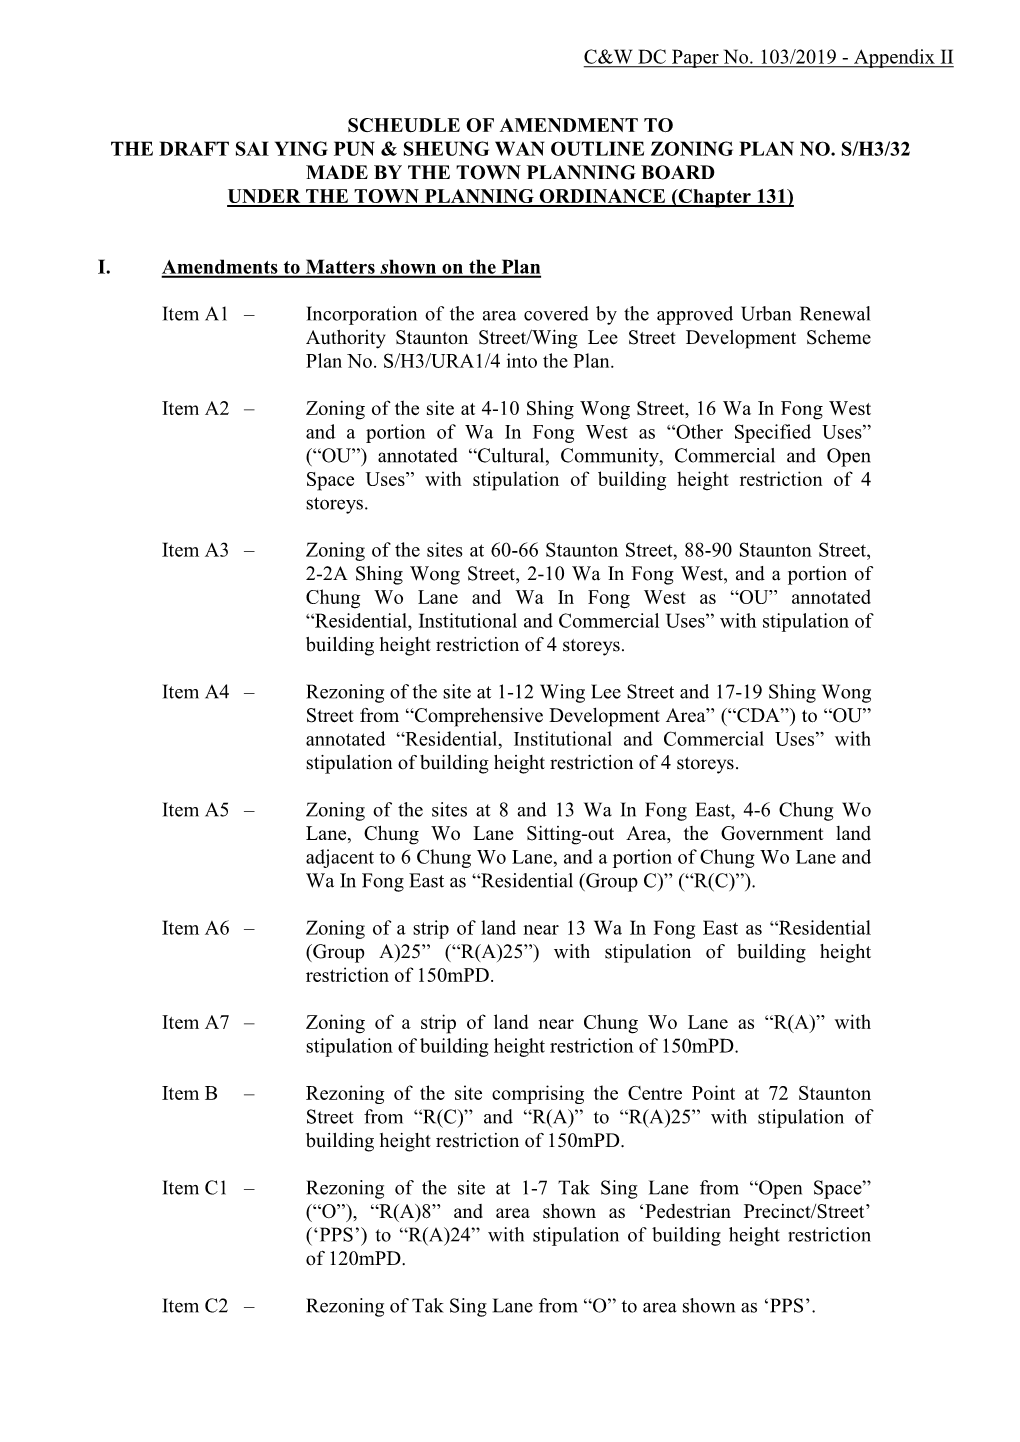 Scheudle of Amendment to the Draft Sai Ying Pun & Sheung Wan